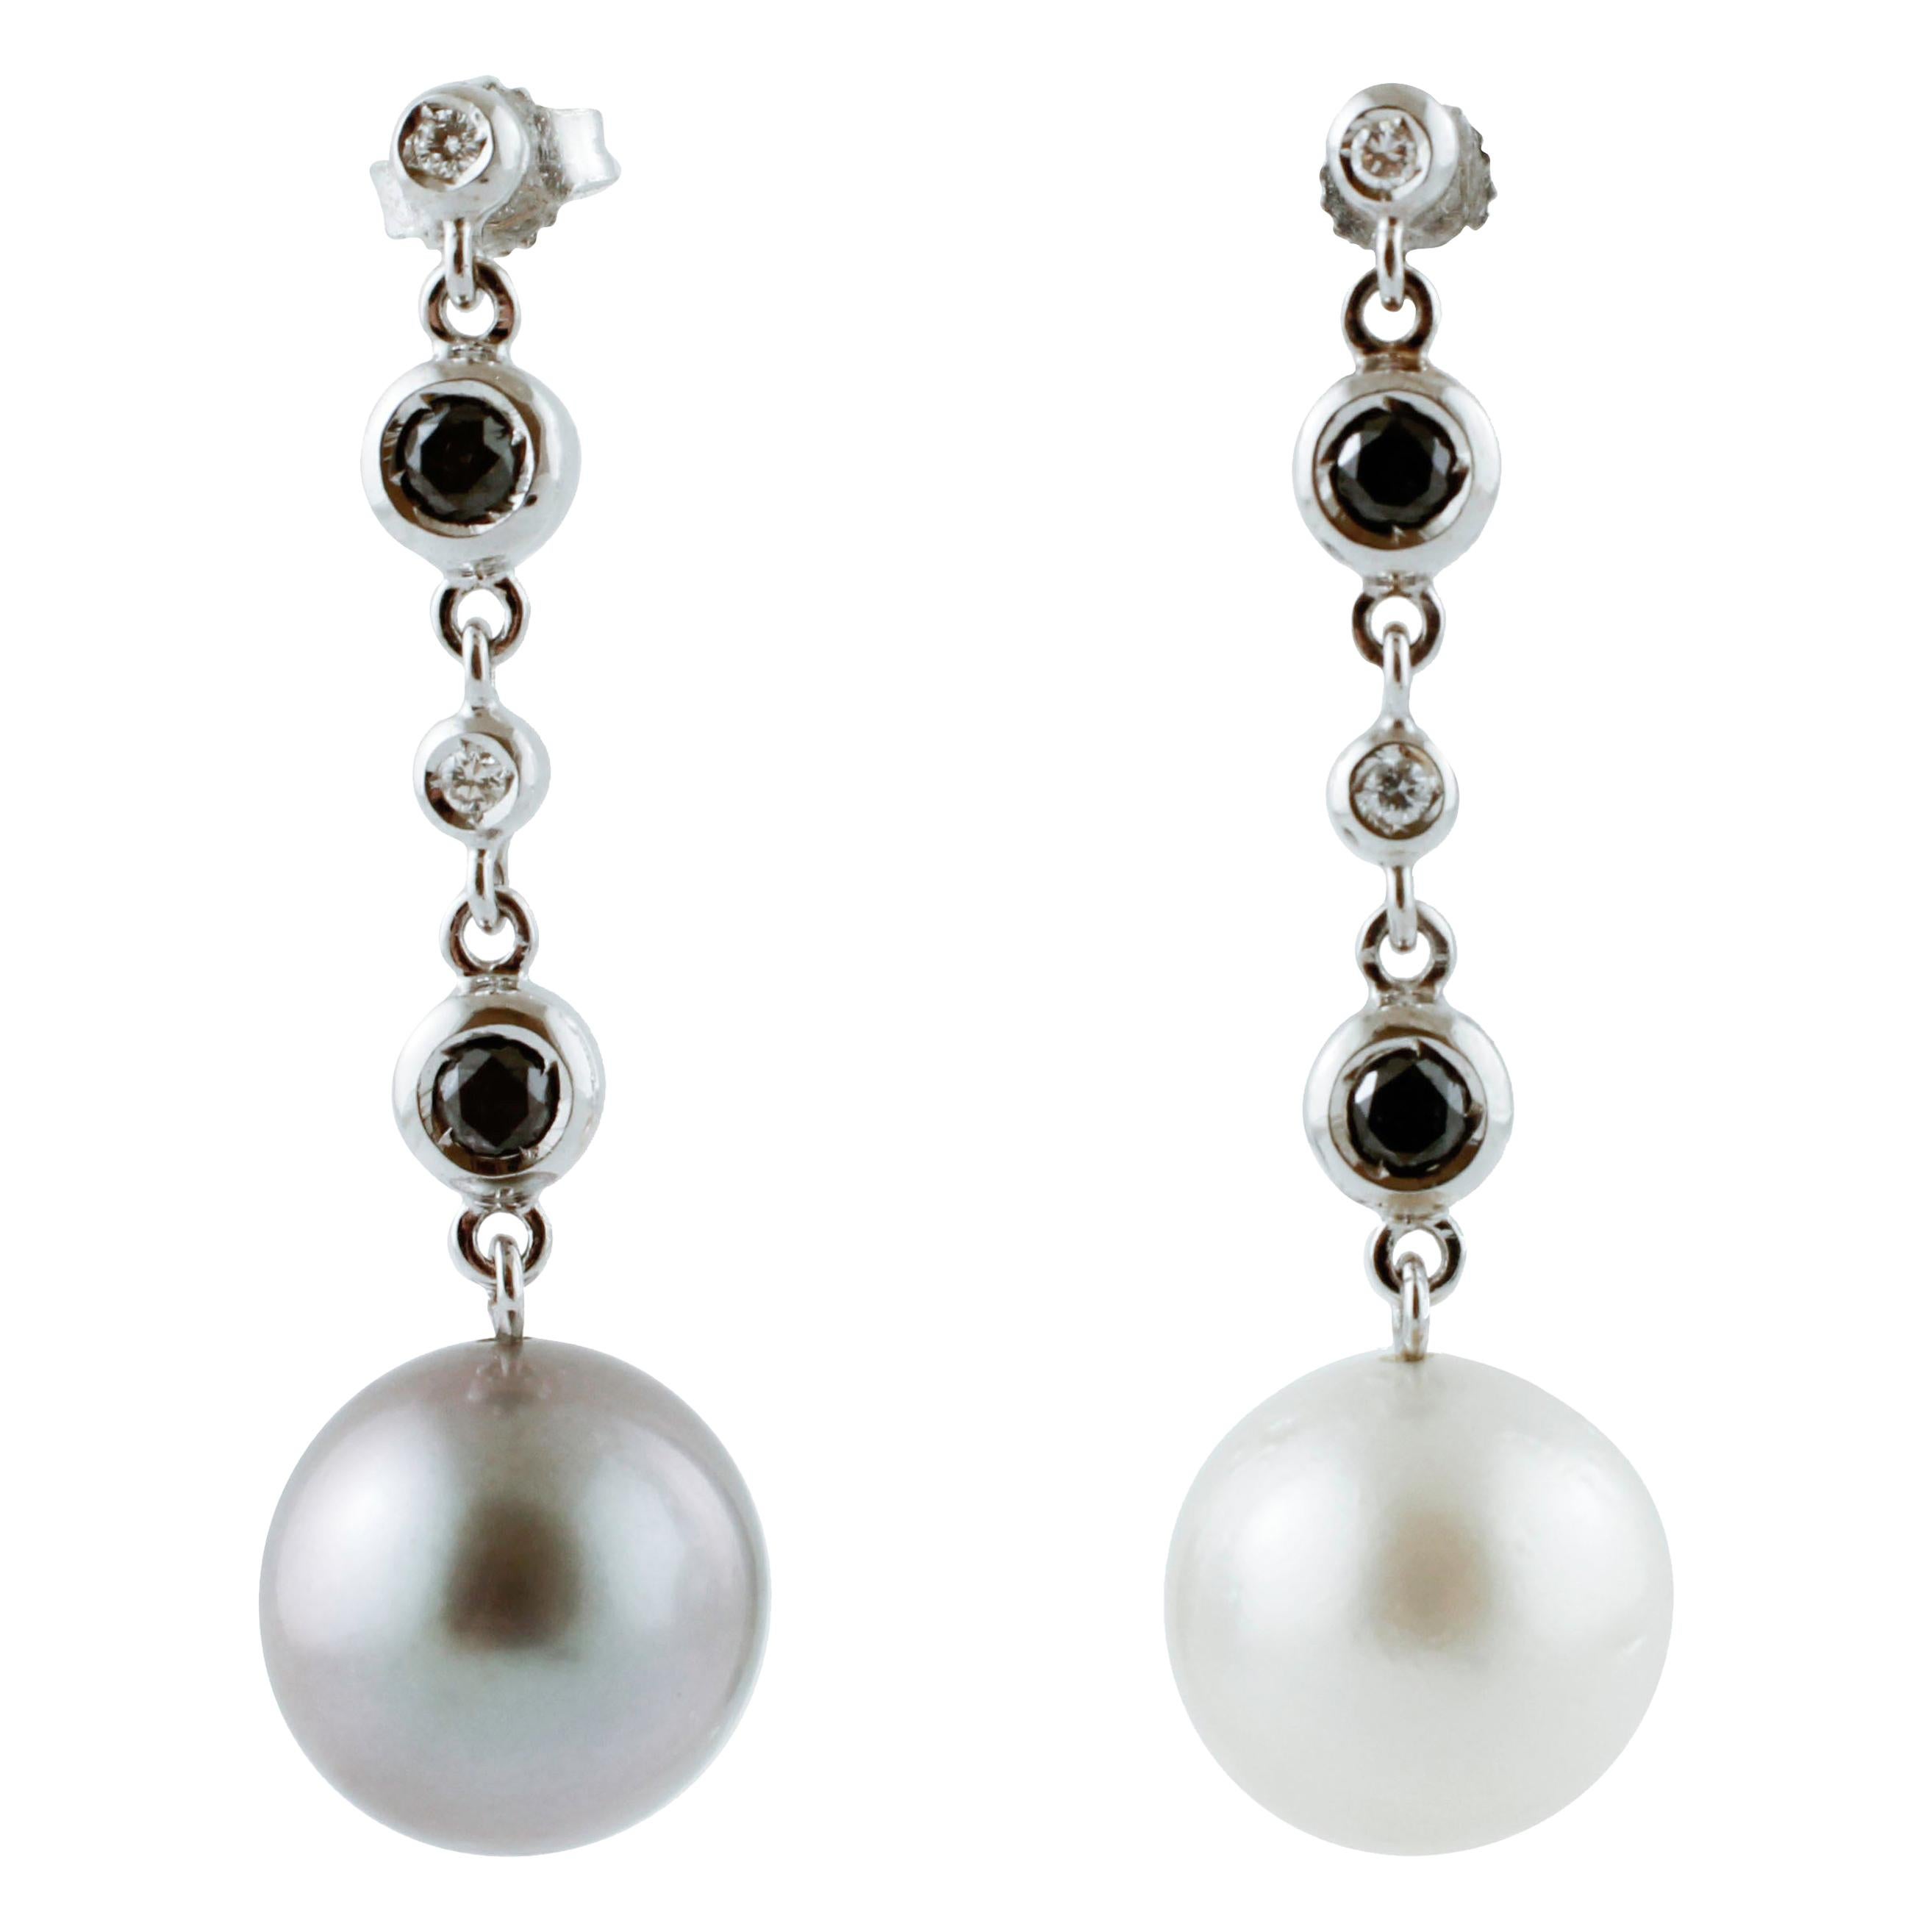 Boucles d'oreilles en or 18 carats, diamants blancs et noirs, perles blanches et grises des mers du Sud